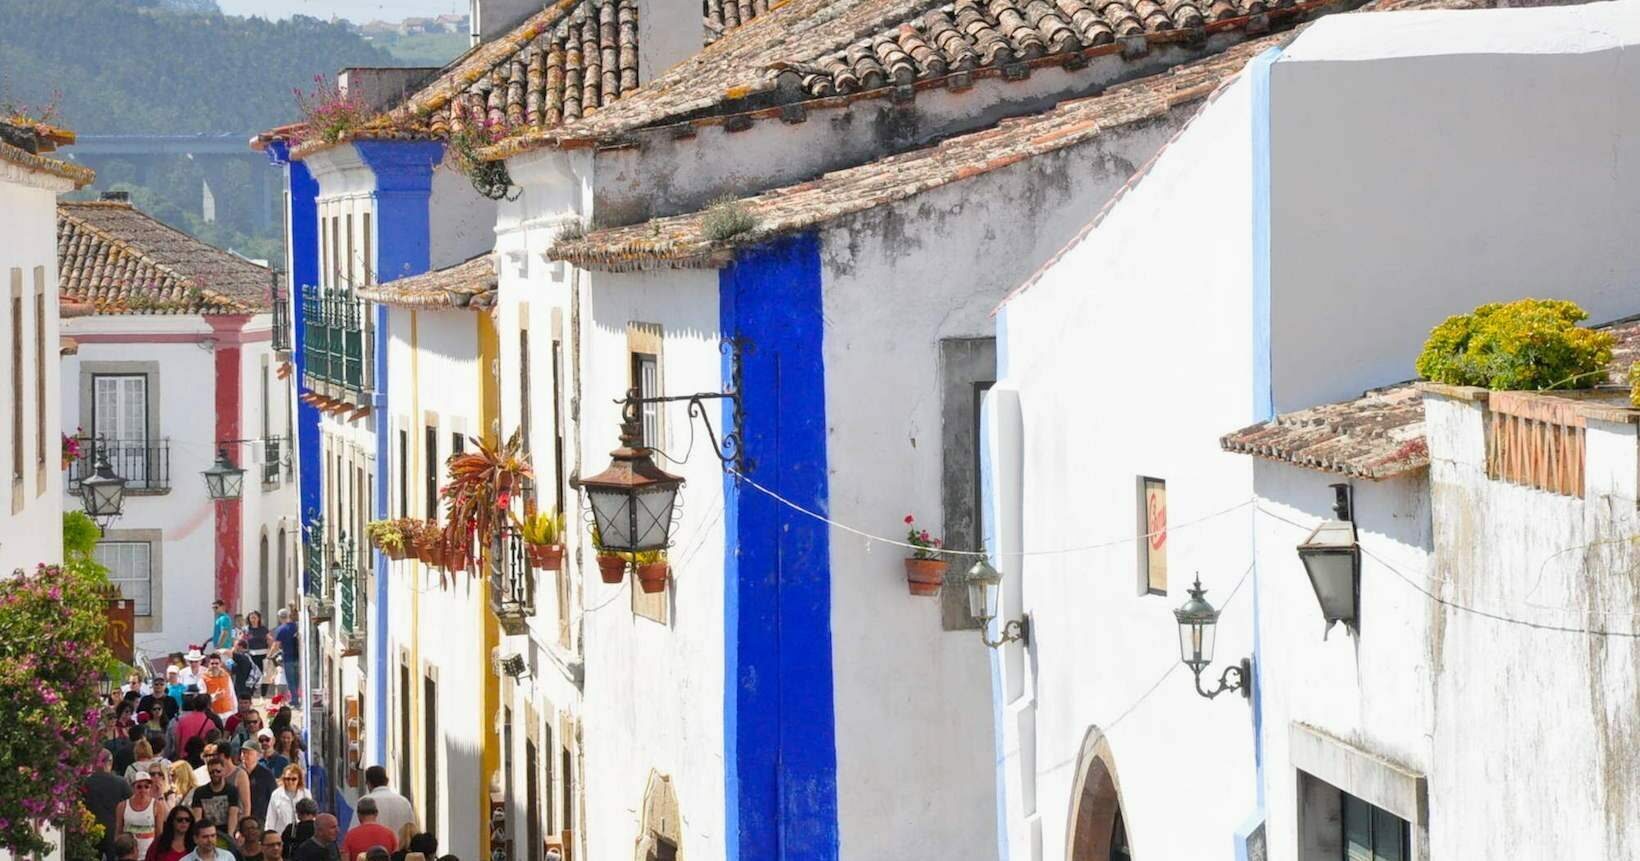 O que fazer em Óbidos: dicas e atrações da vila medieval portuguesa